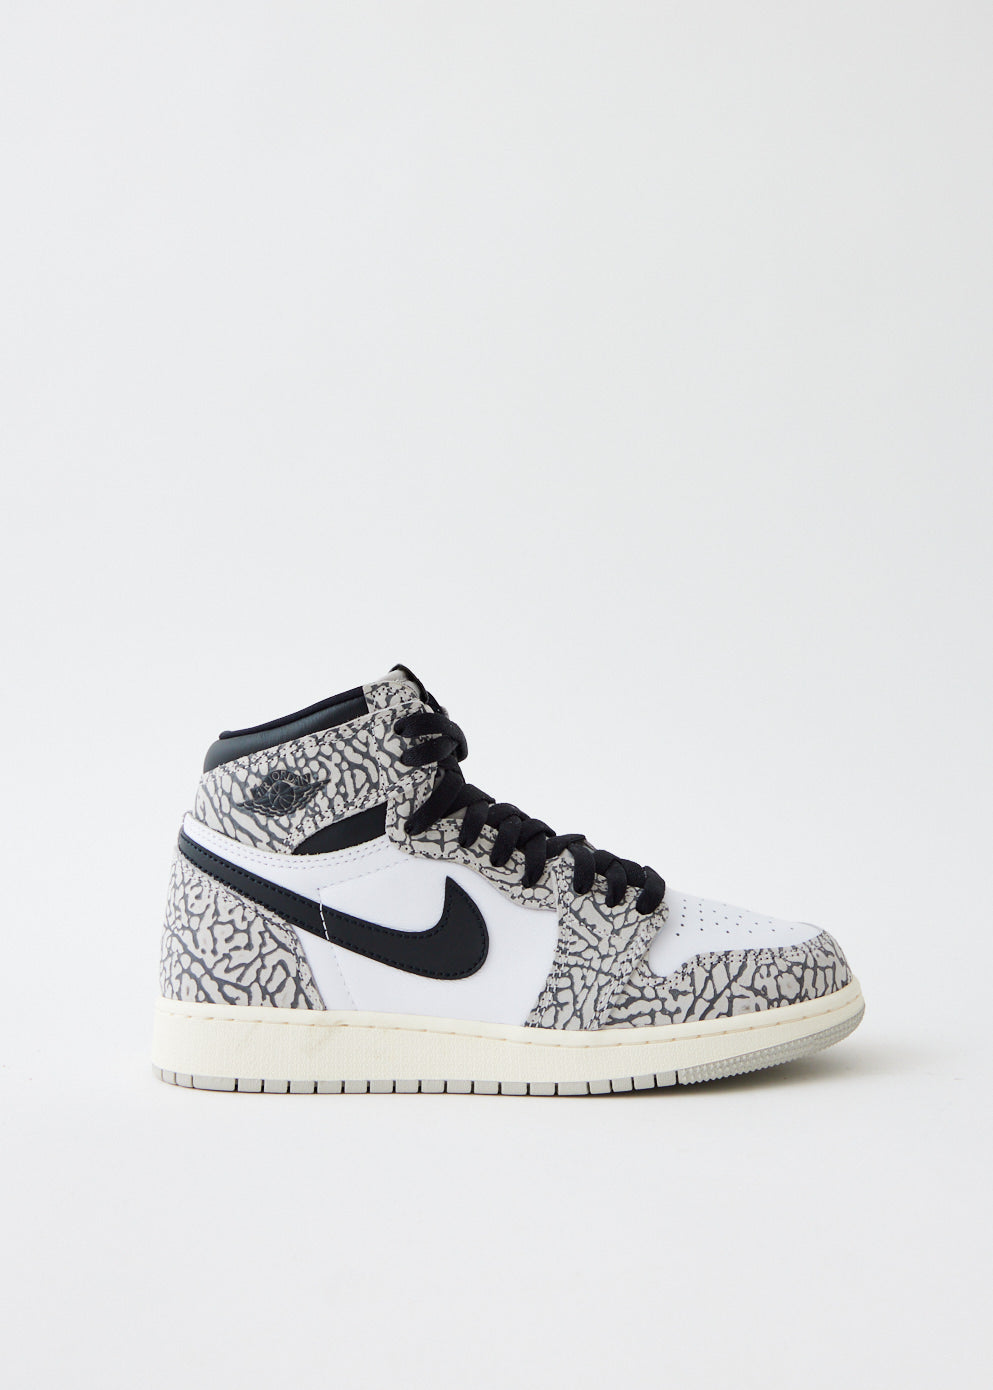 Nike Air Jordan High OG "White Cement"